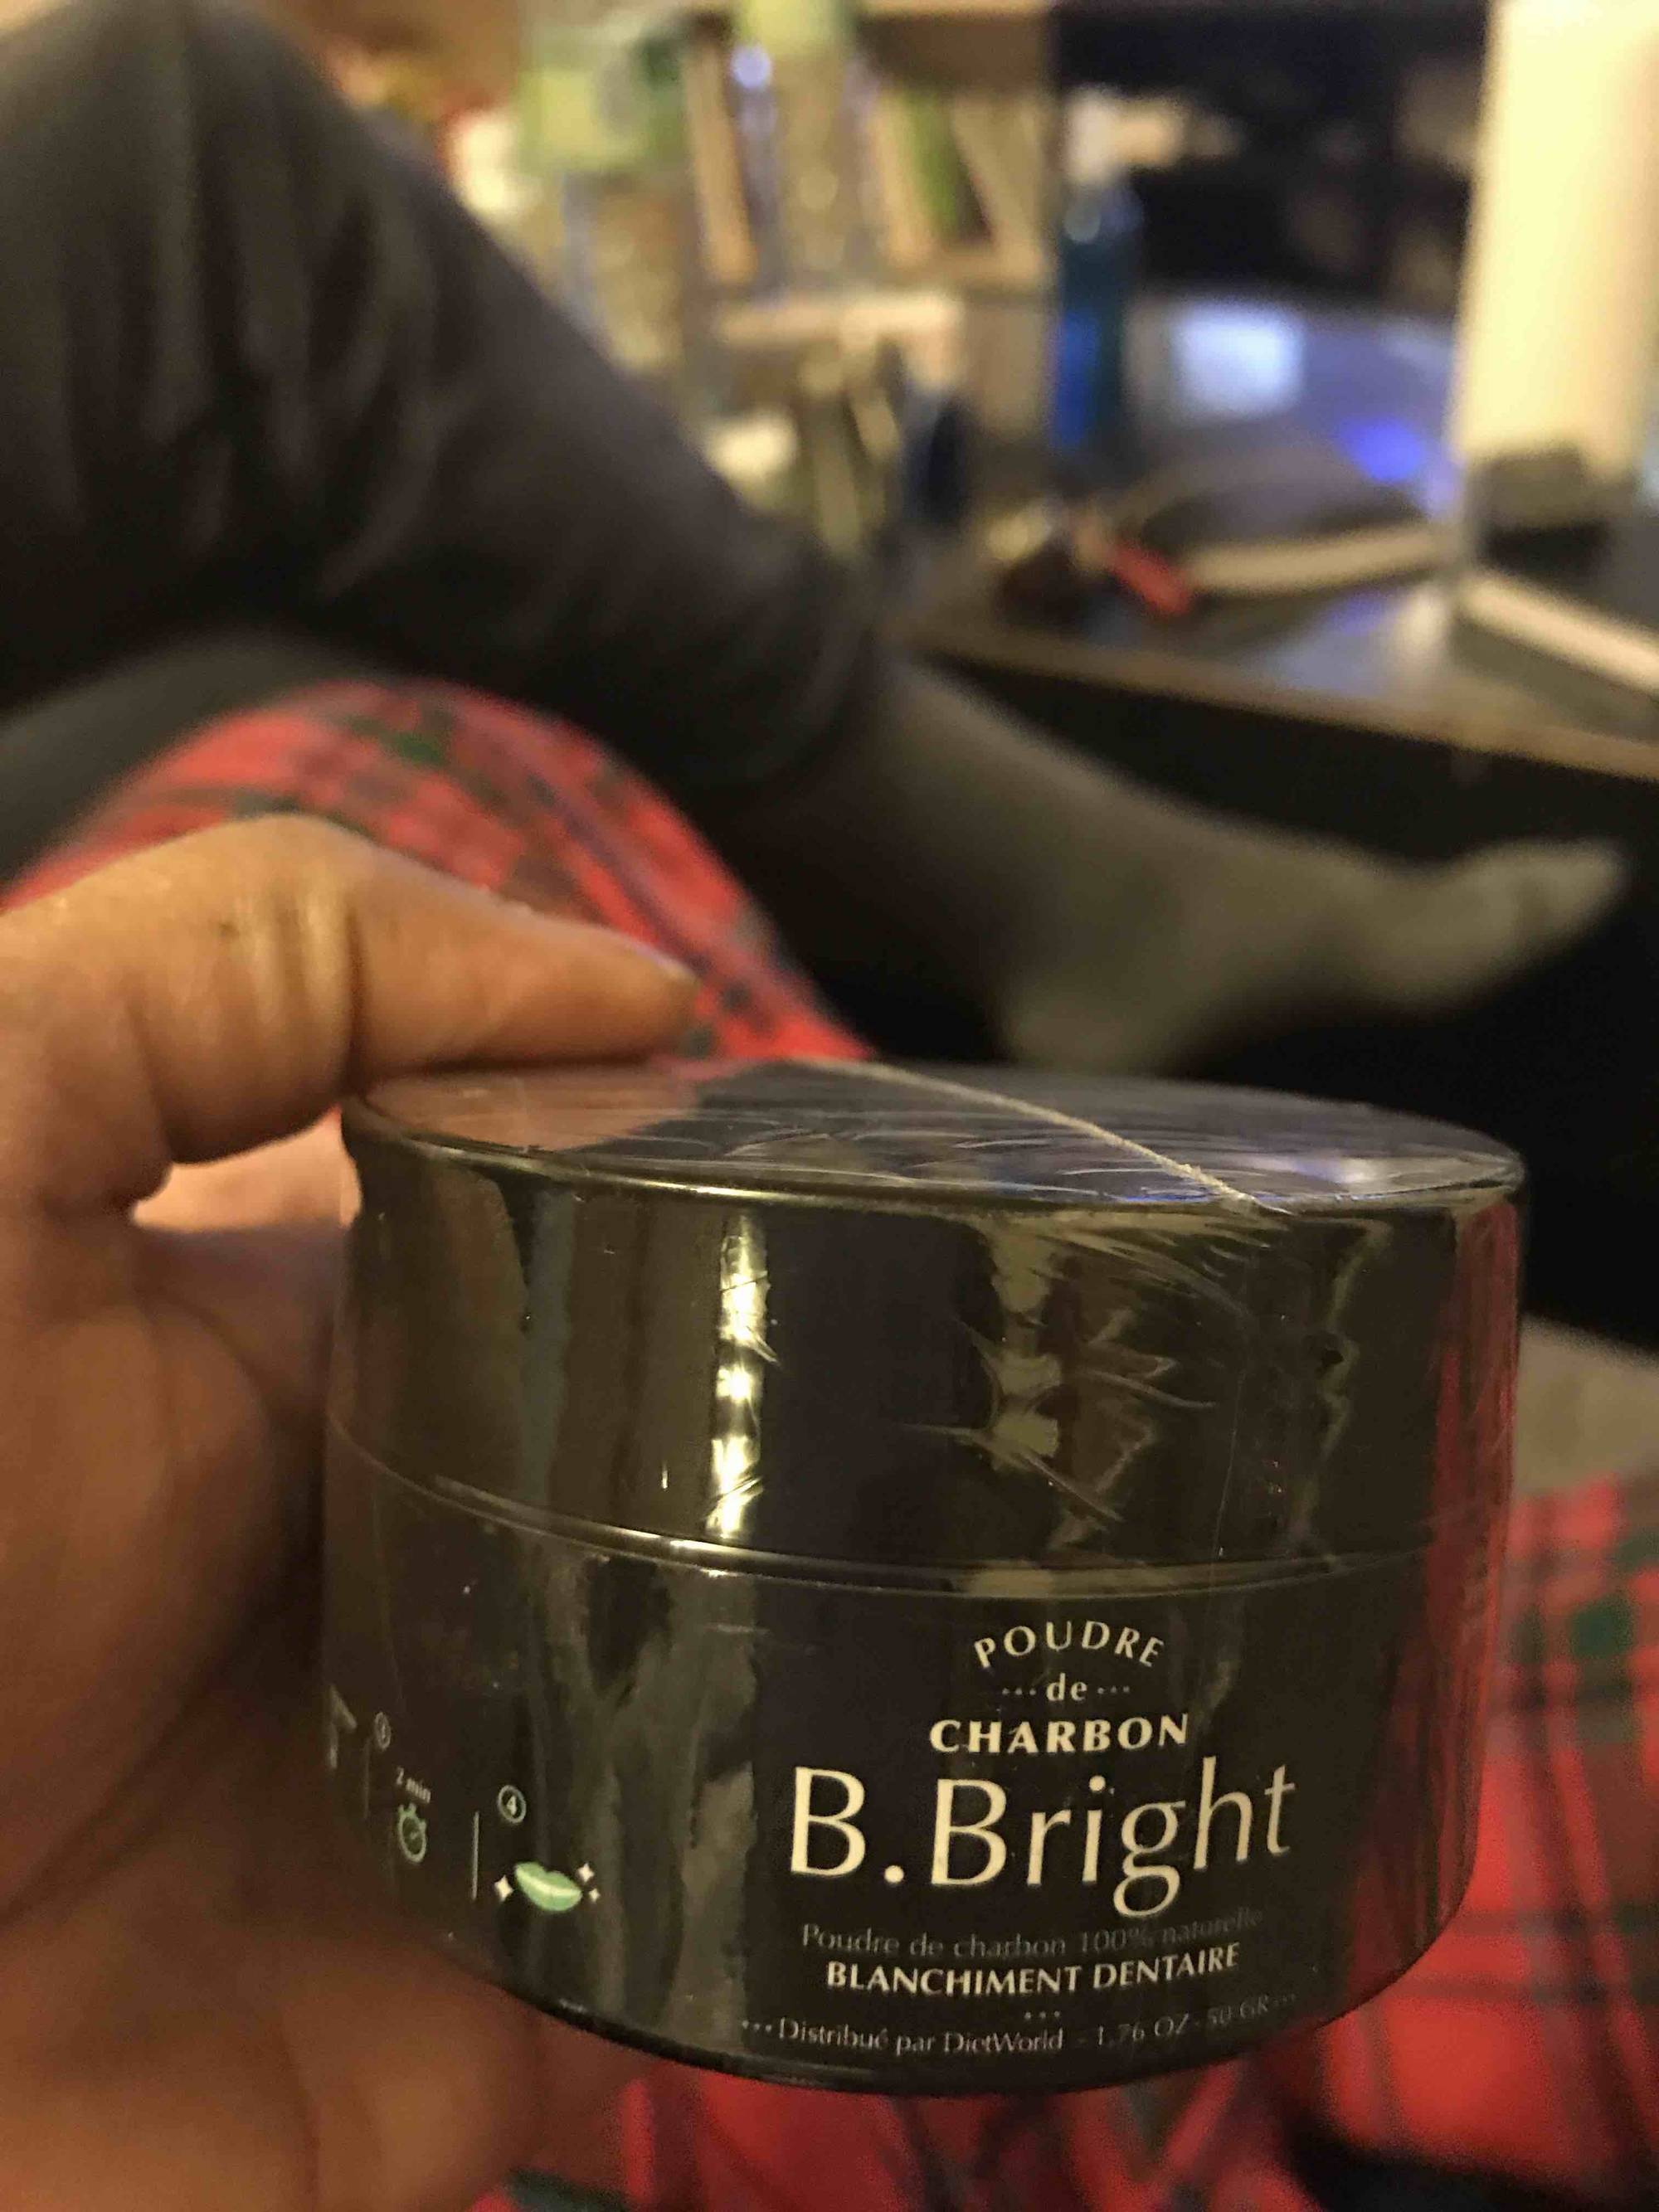 B. BRIGHT - Poudre de charbon - Blanchiment dentaire